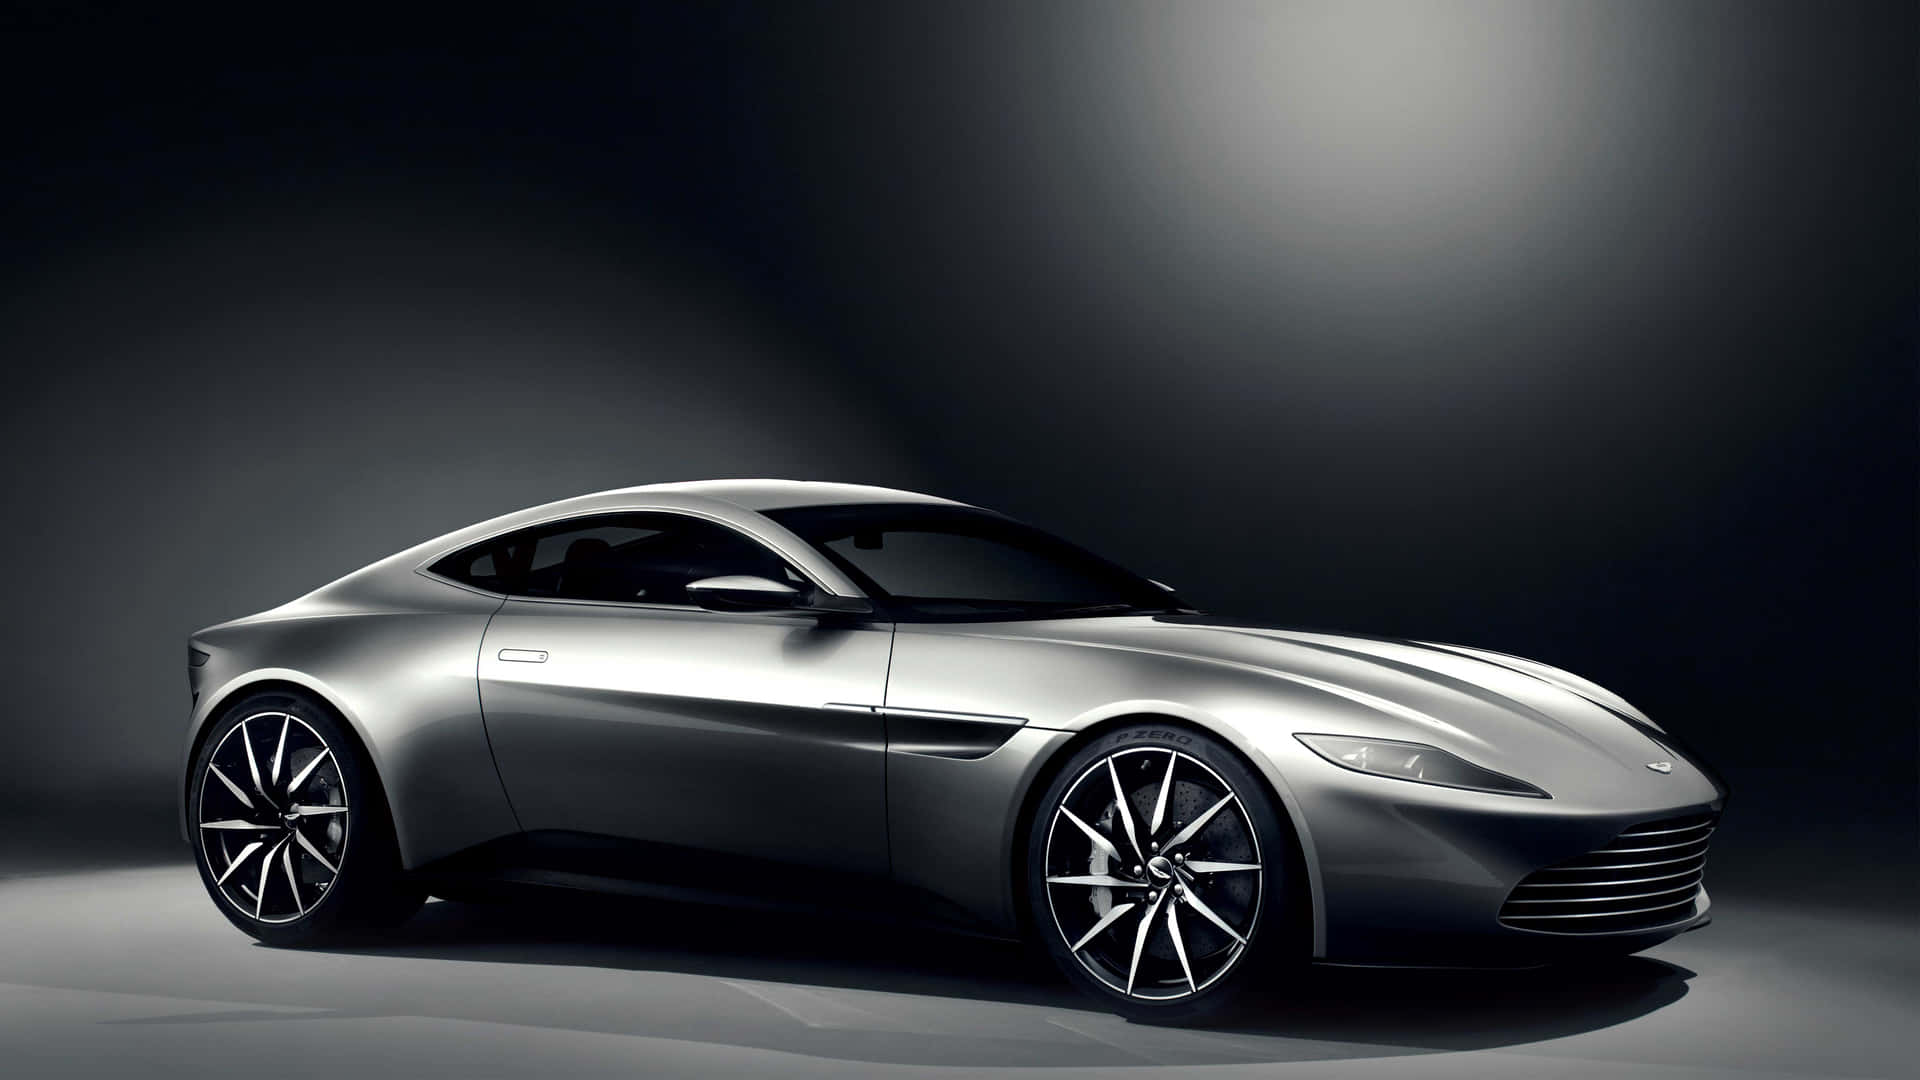 Stilsom Talar Volymer: Den Ikoniska Aston Martin